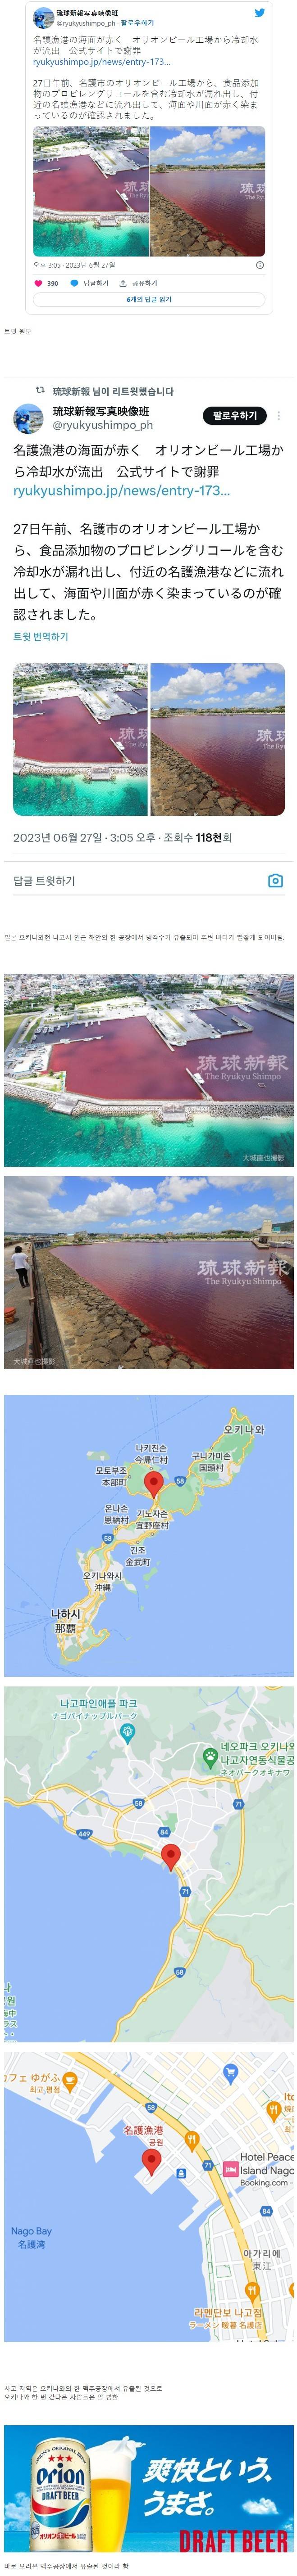 냉각수 유출 사고로 붉게 변한 일본 바다 | 인스티즈